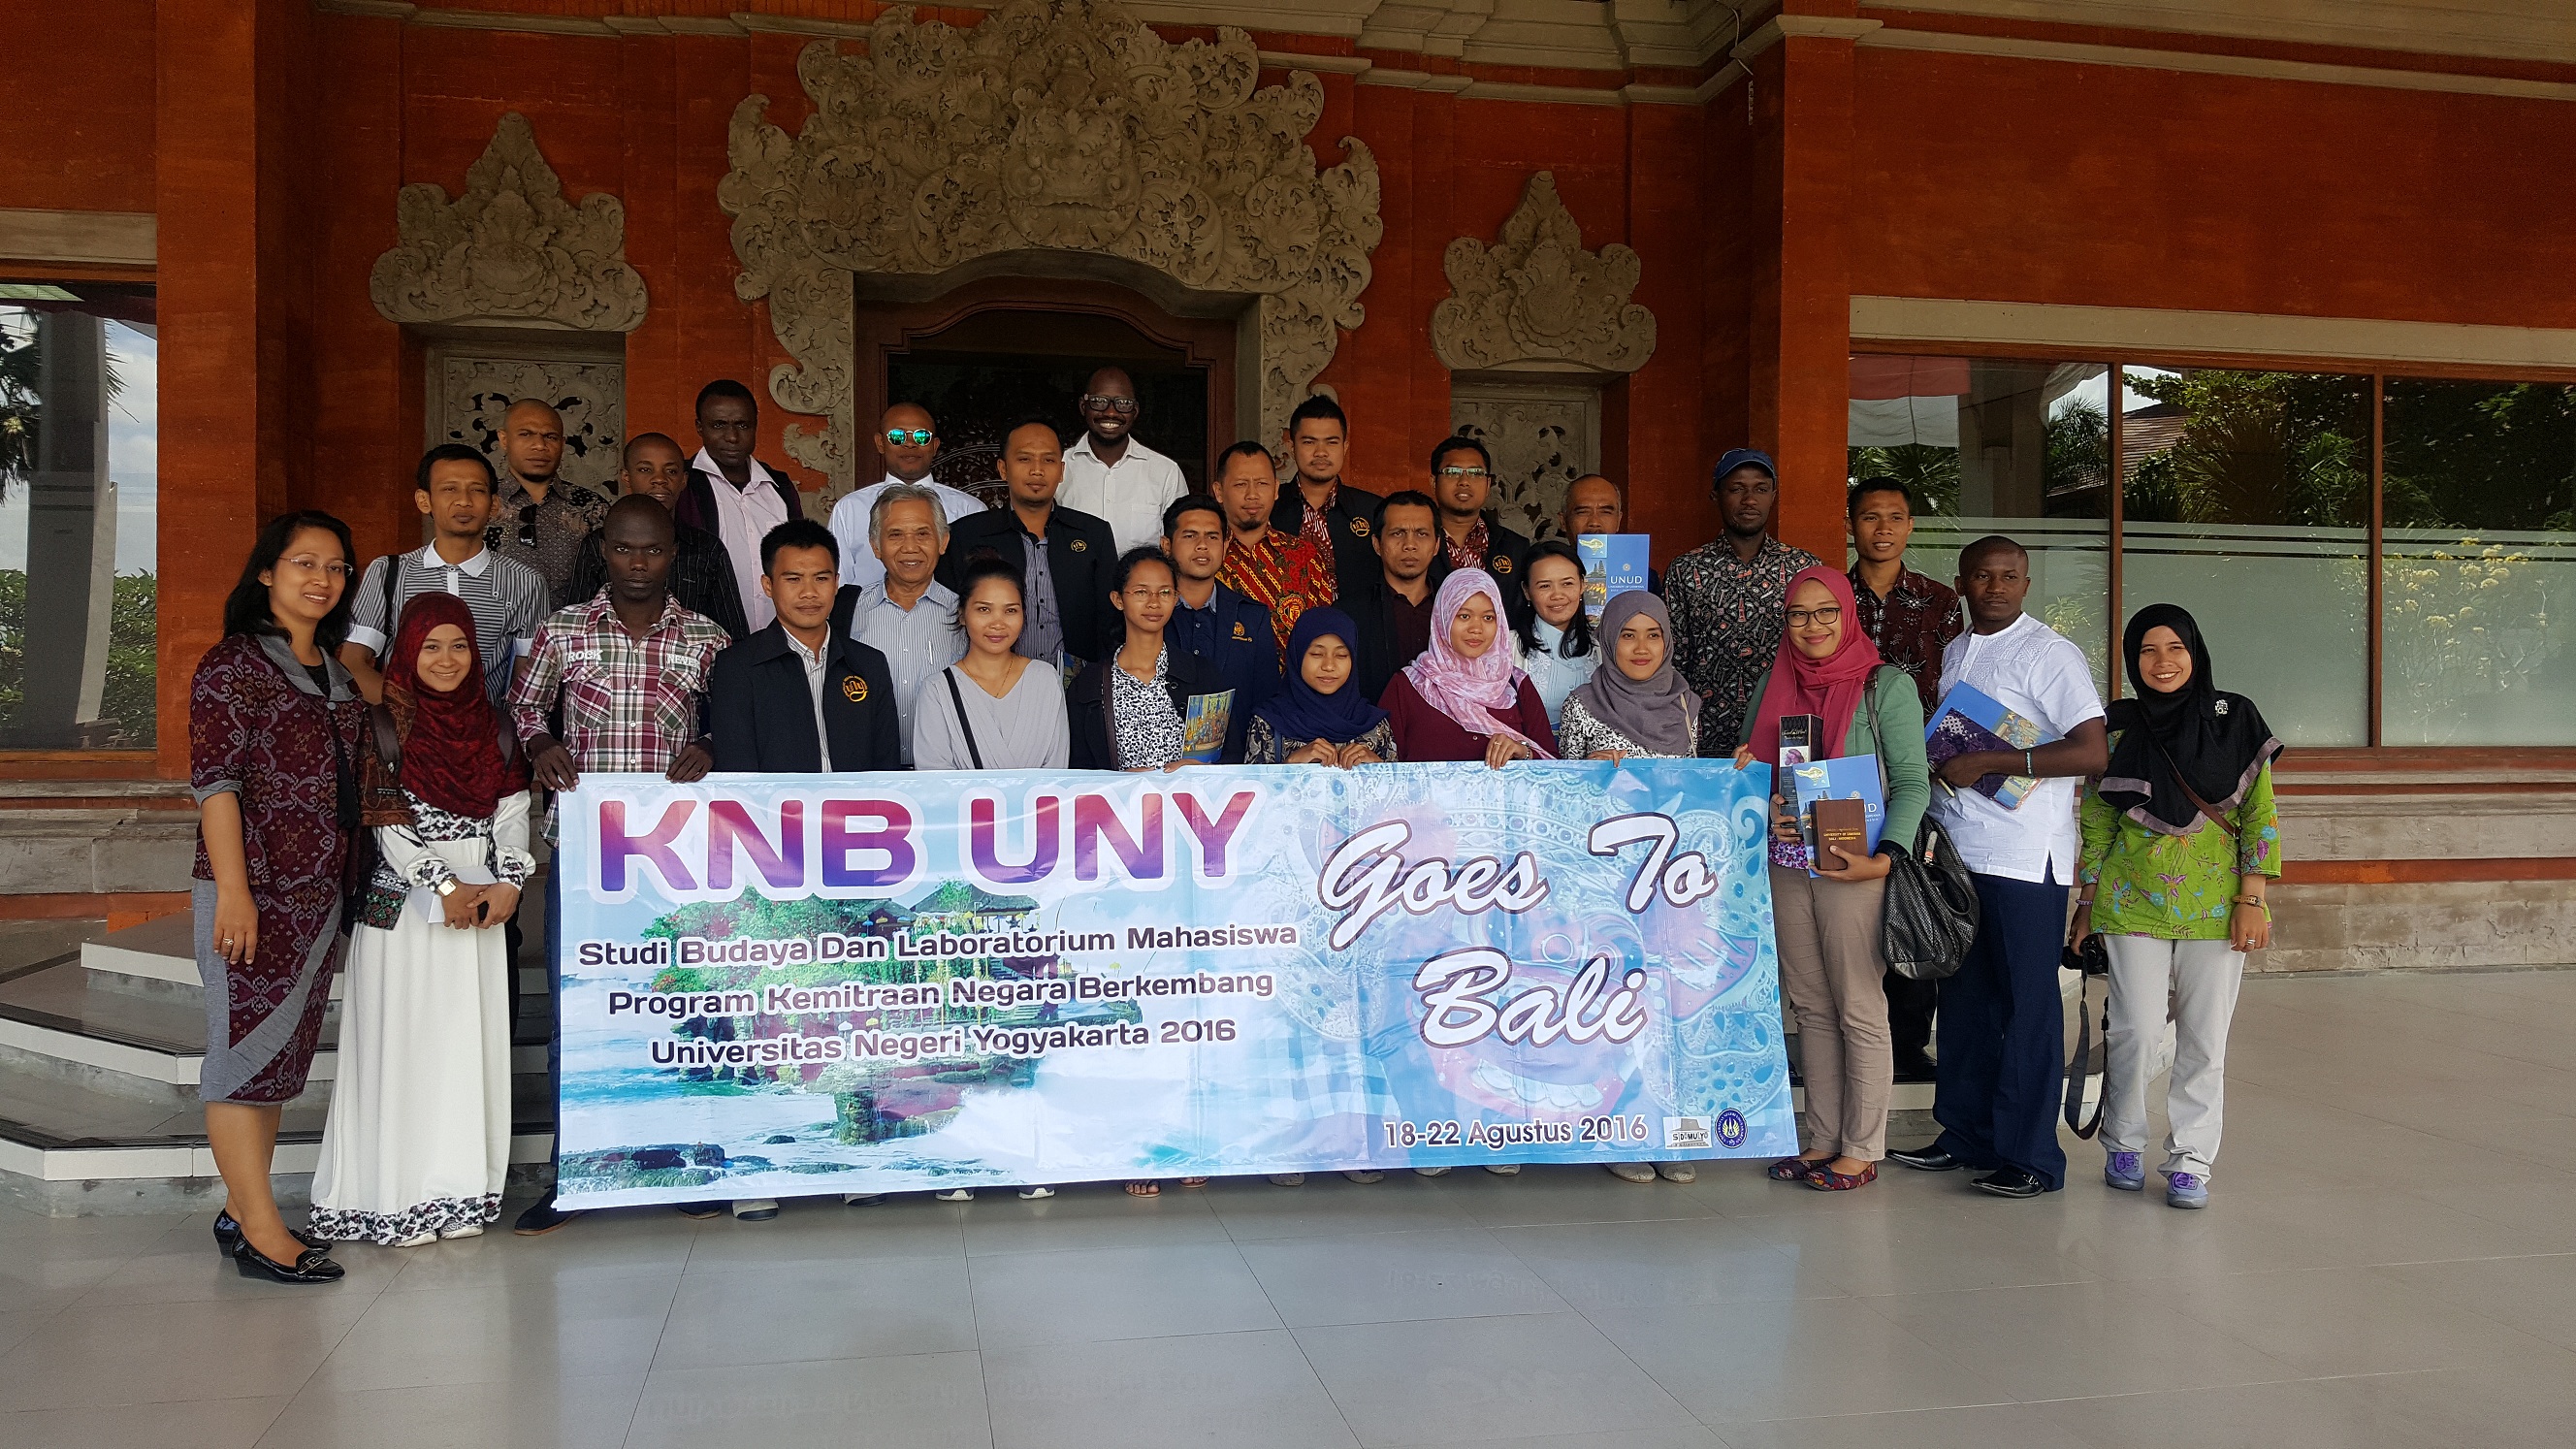 Kunjungan dari Universitas Negeri Yogyakarta